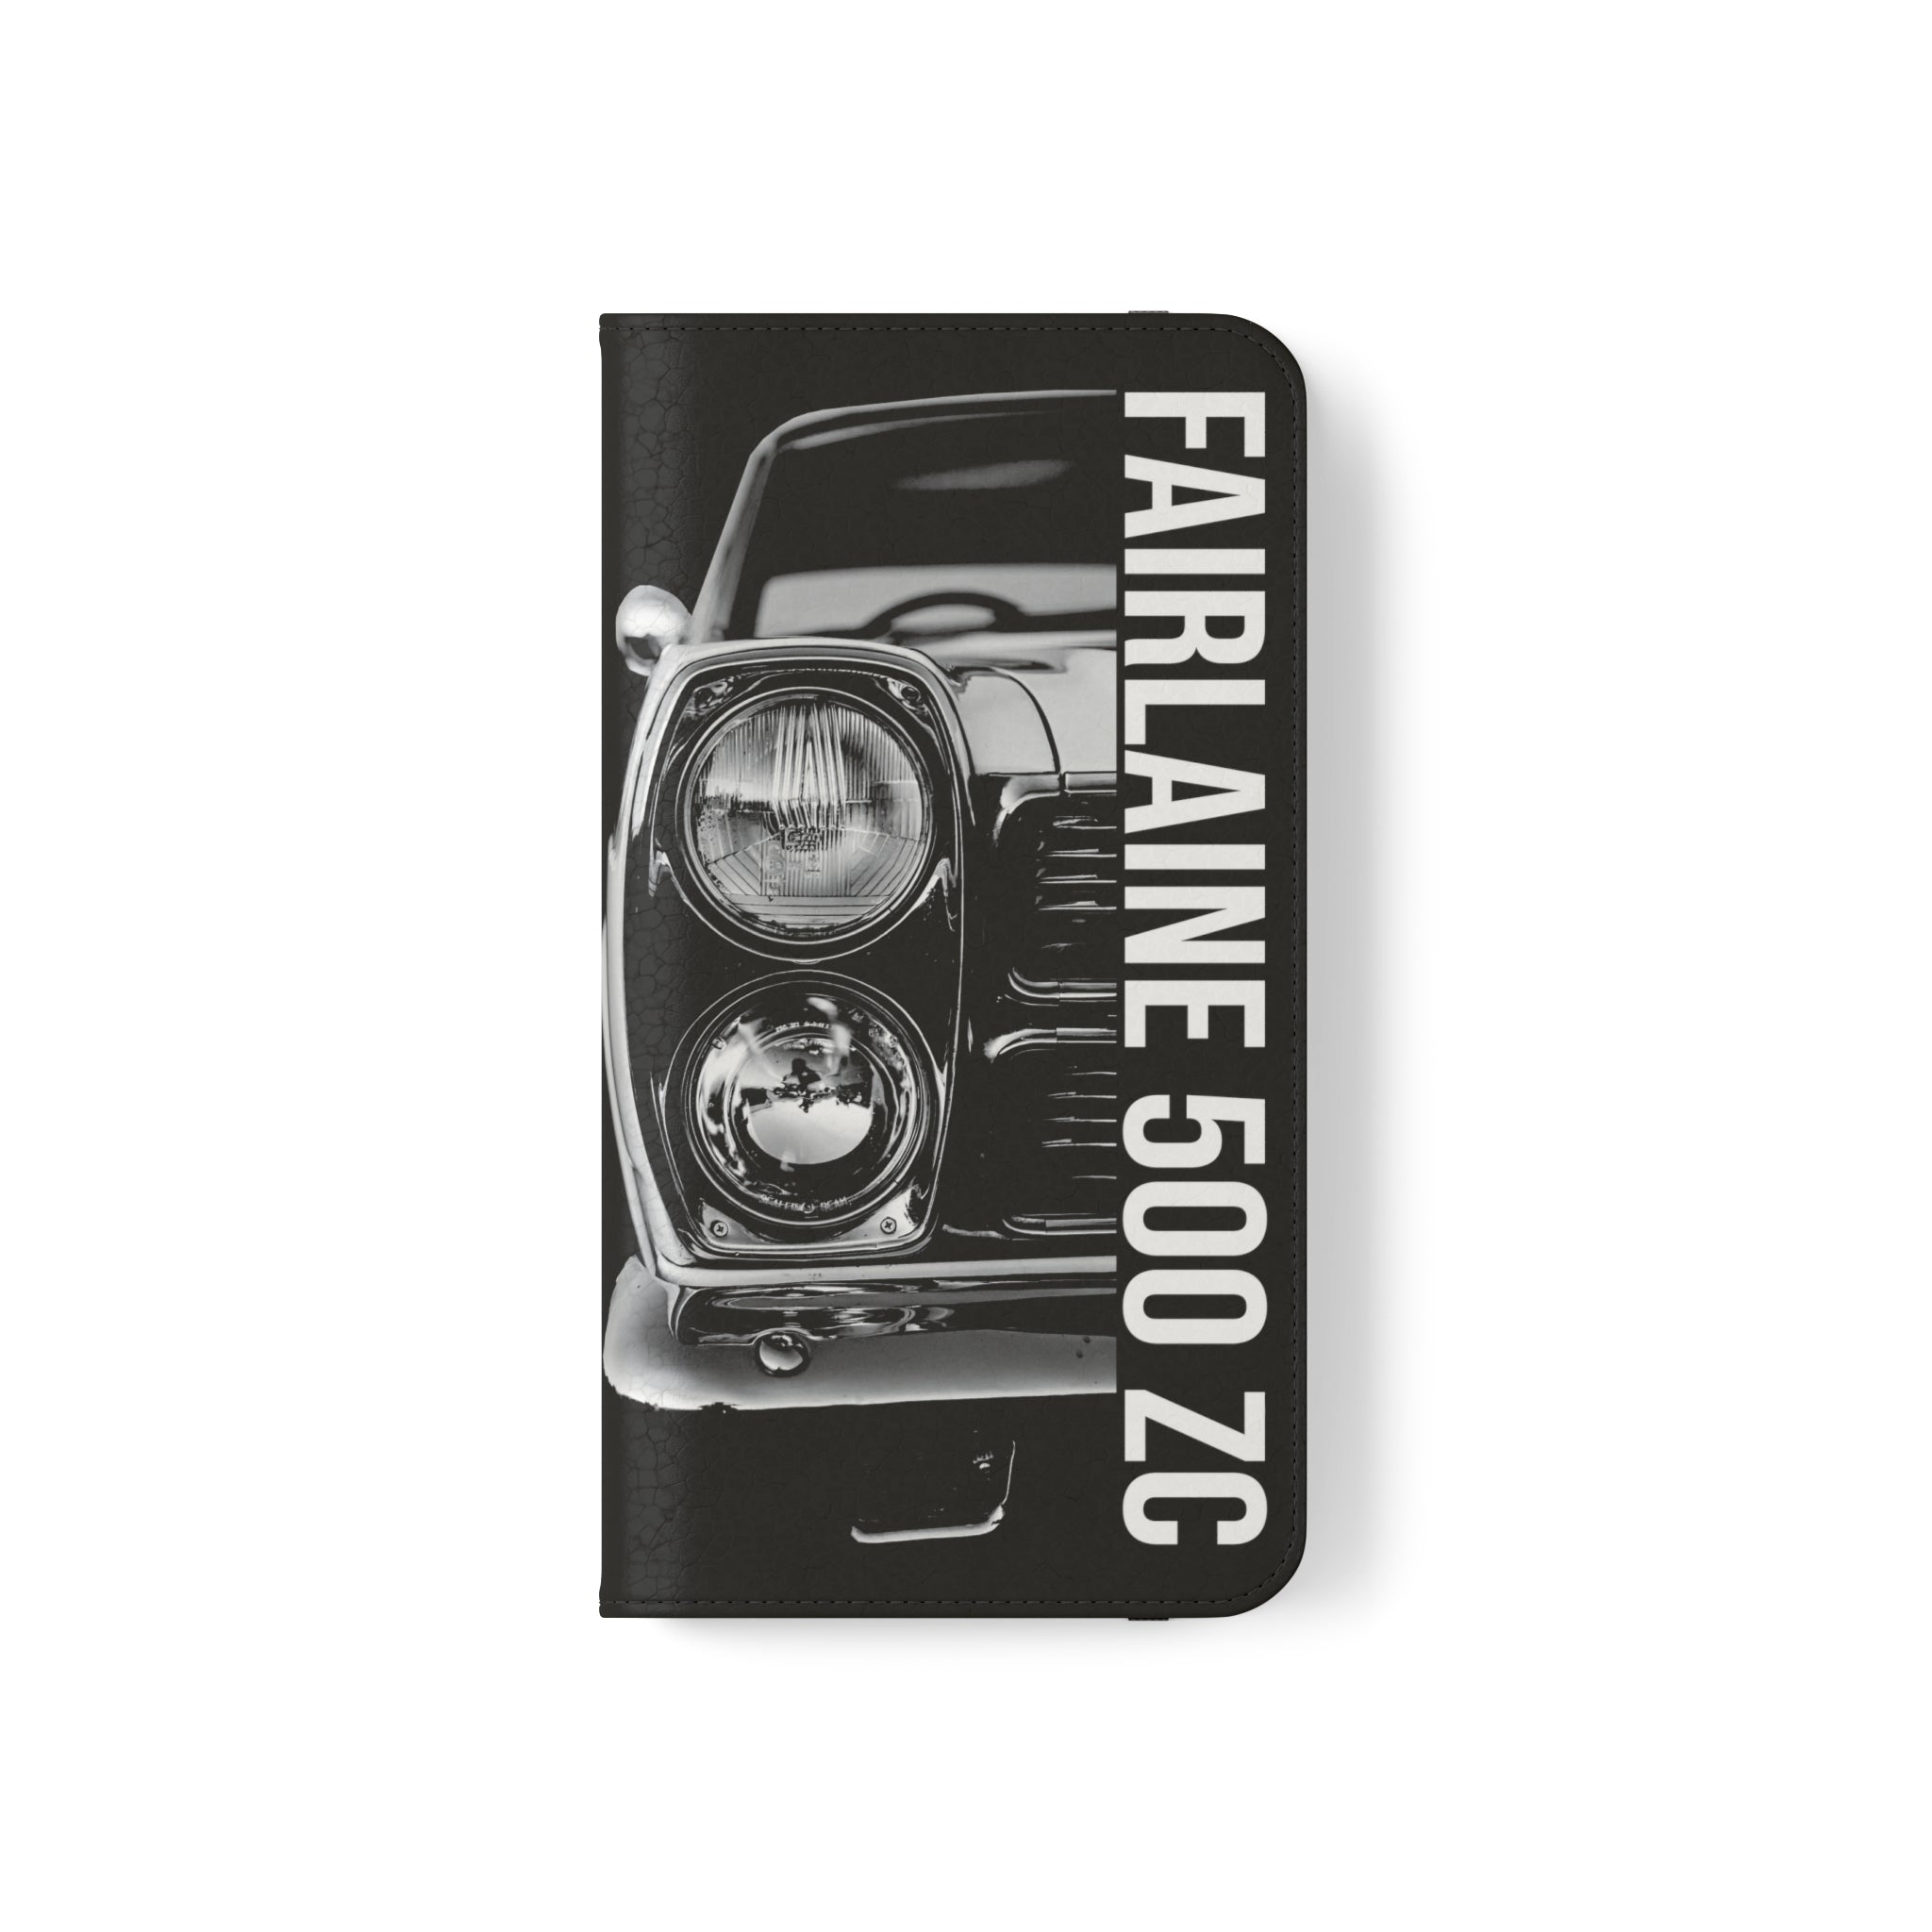 Fairlane 500 ZC - Flip Cases